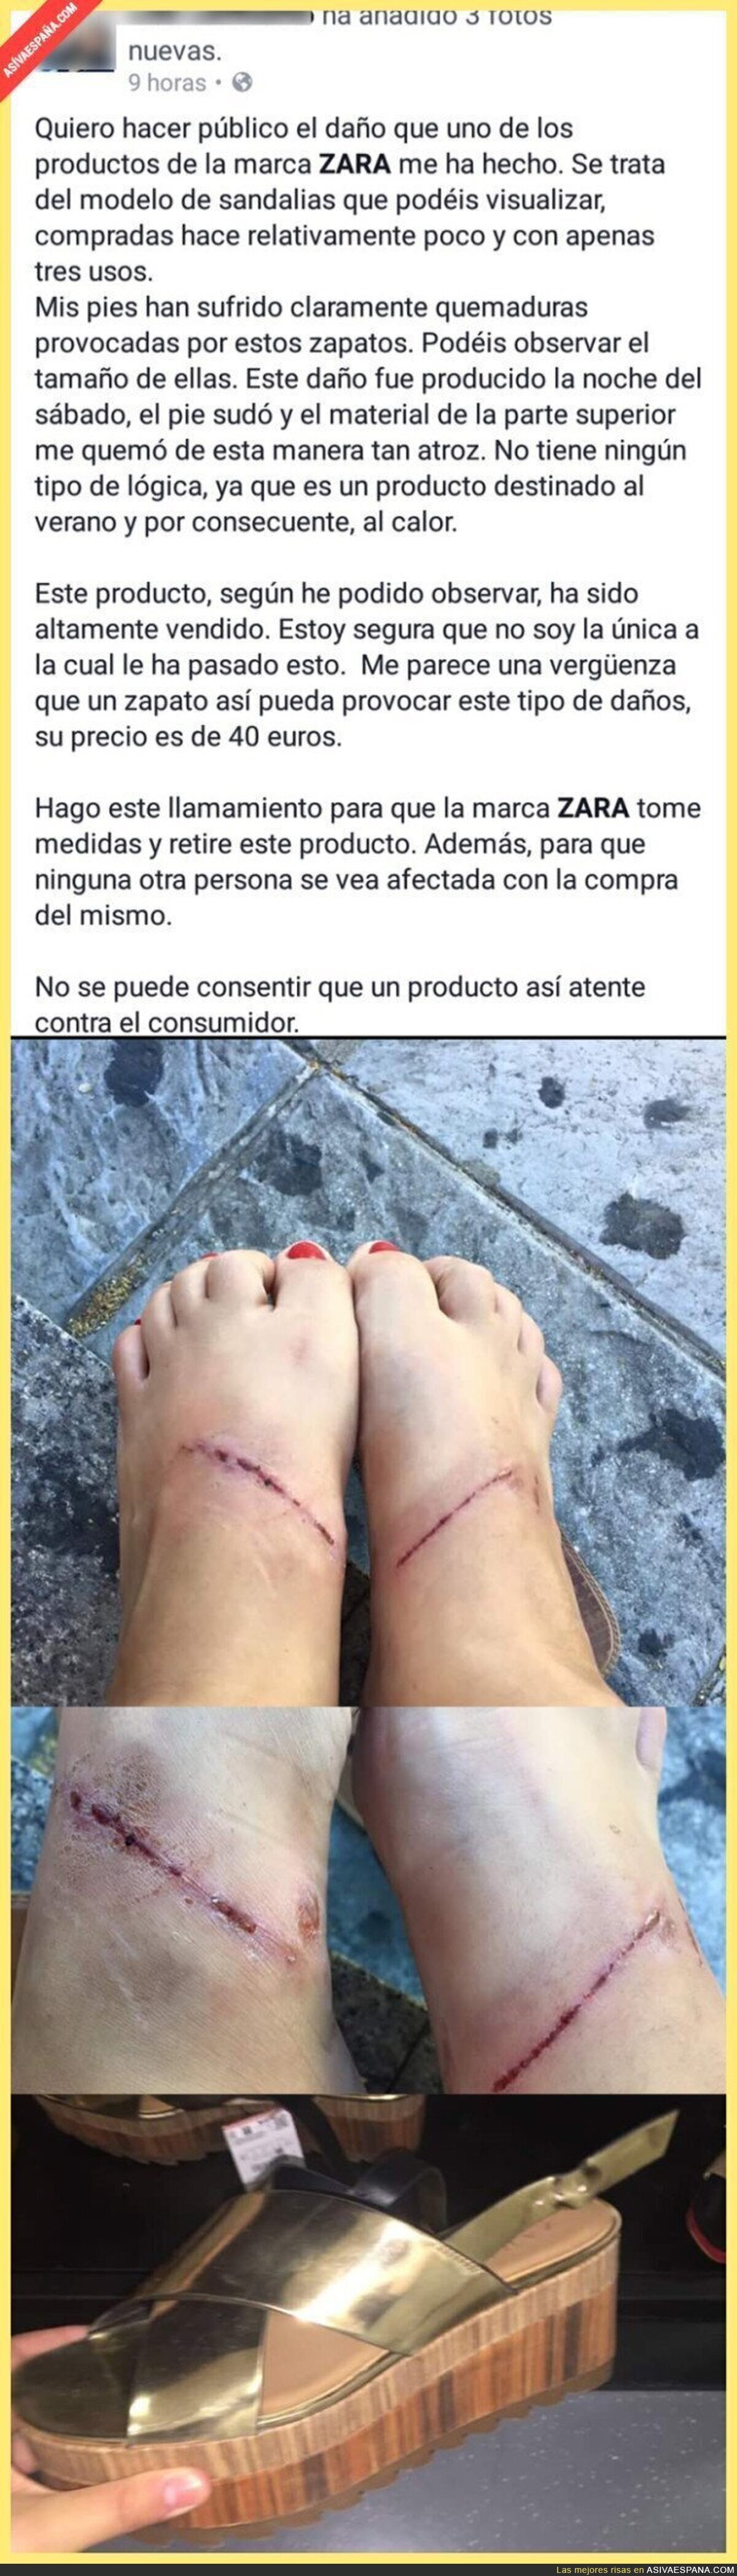 ¡OJO! Esta chica denuncia las graves heridas en los pies producidas por unos zapatos de ZARA